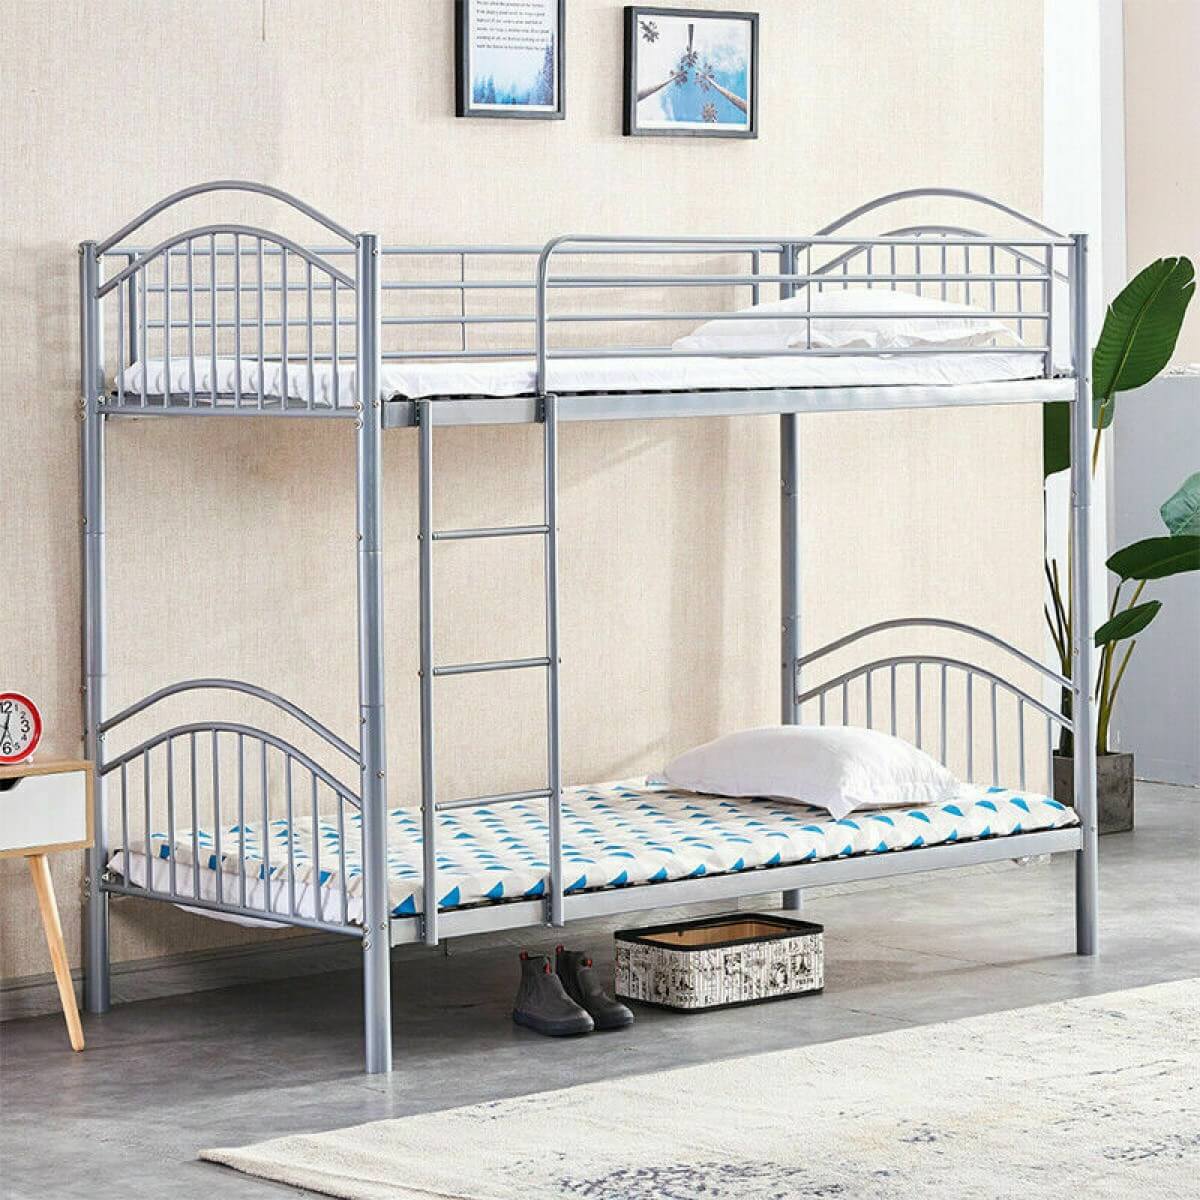 Những chiếc giường tầng bằng sắt là giải pháp cho không gian nhỏ hẹp